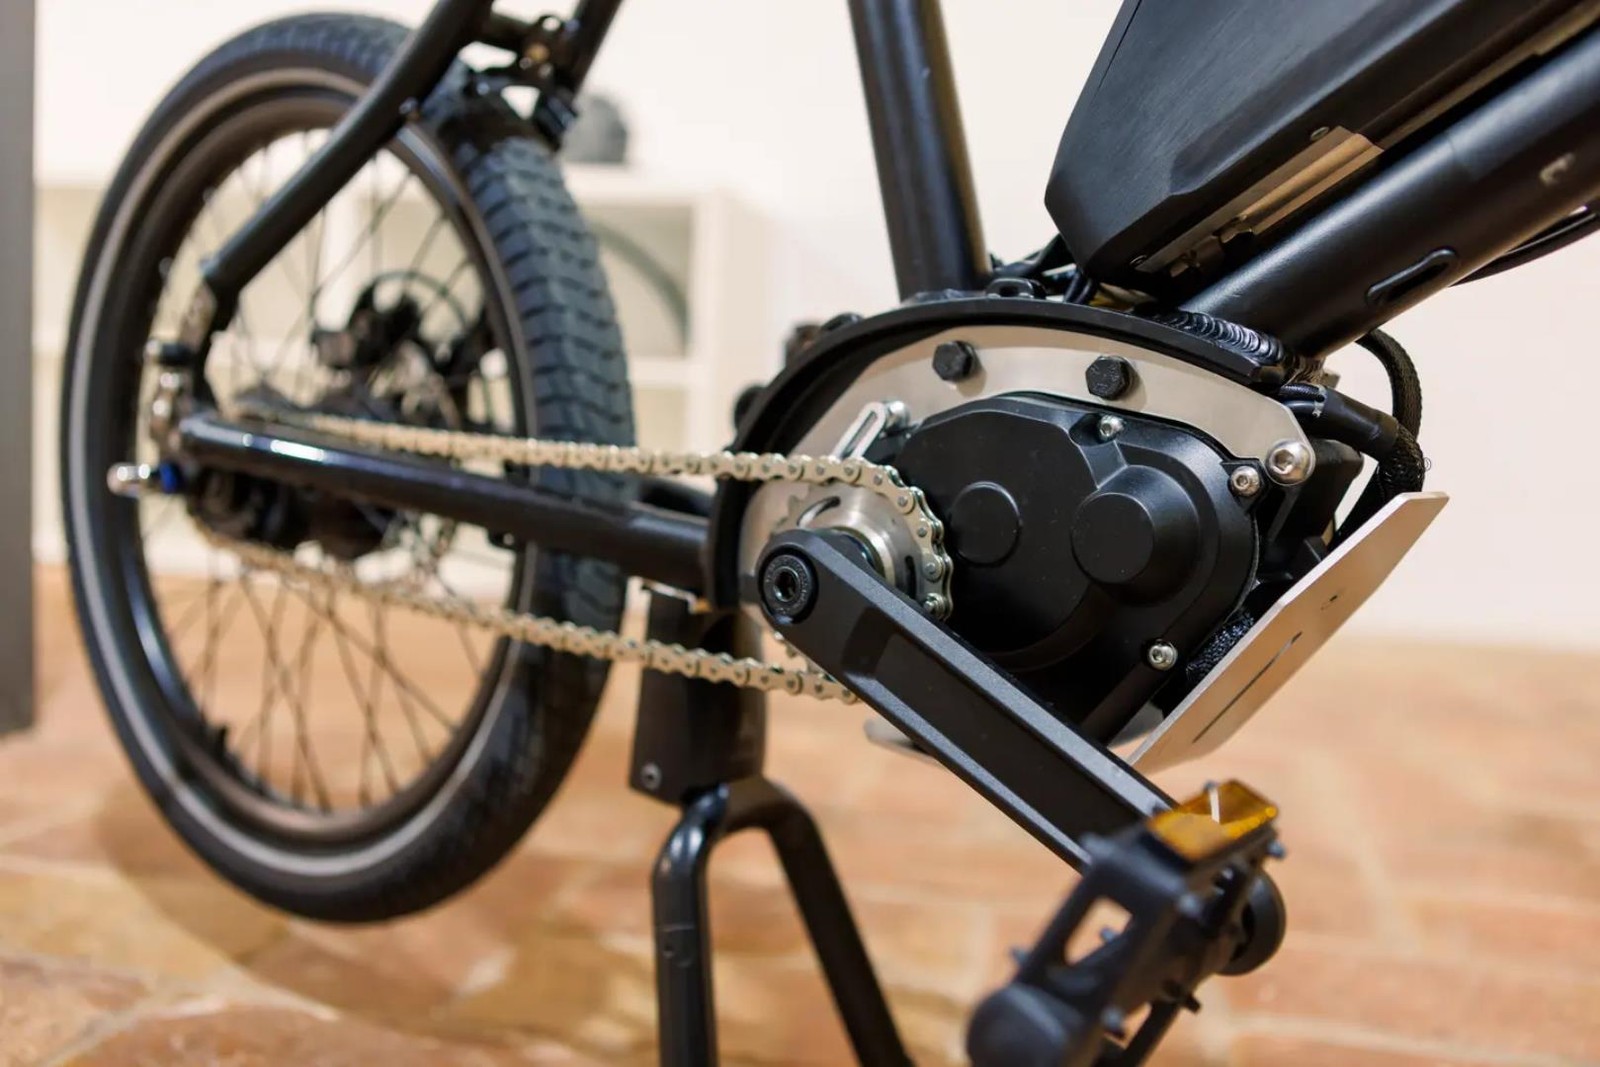 Elektryczne rowery czeka rewolucja. Nowy system napędu sprawi, że będą jeszcze lepsze